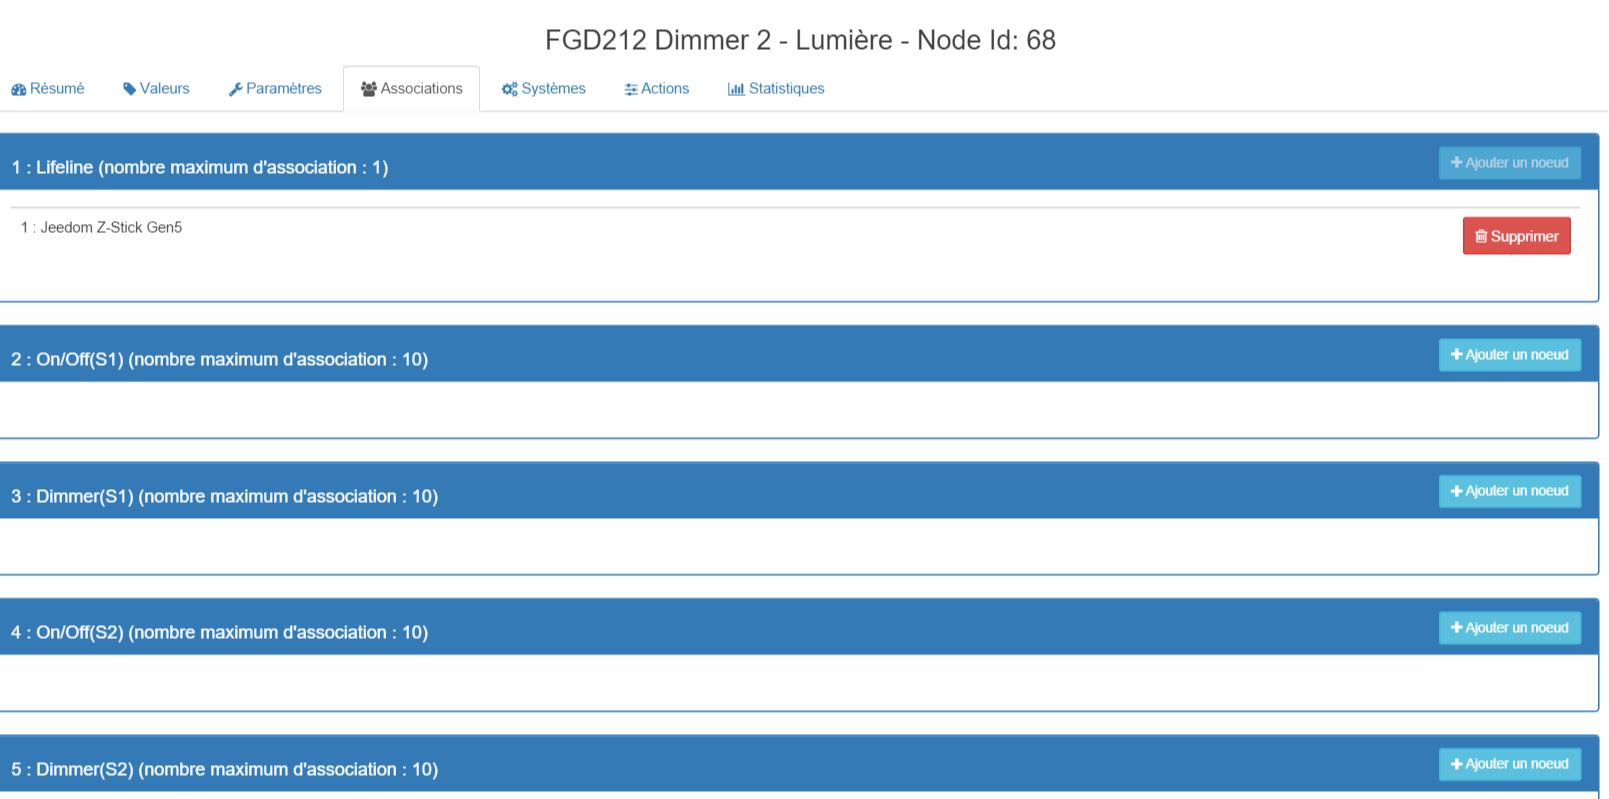 Dimmer 2 FGD-212 et voyant témoin Easy LED (Legrand Mosaic) - Discussions  Générales - Communauté Jeedom